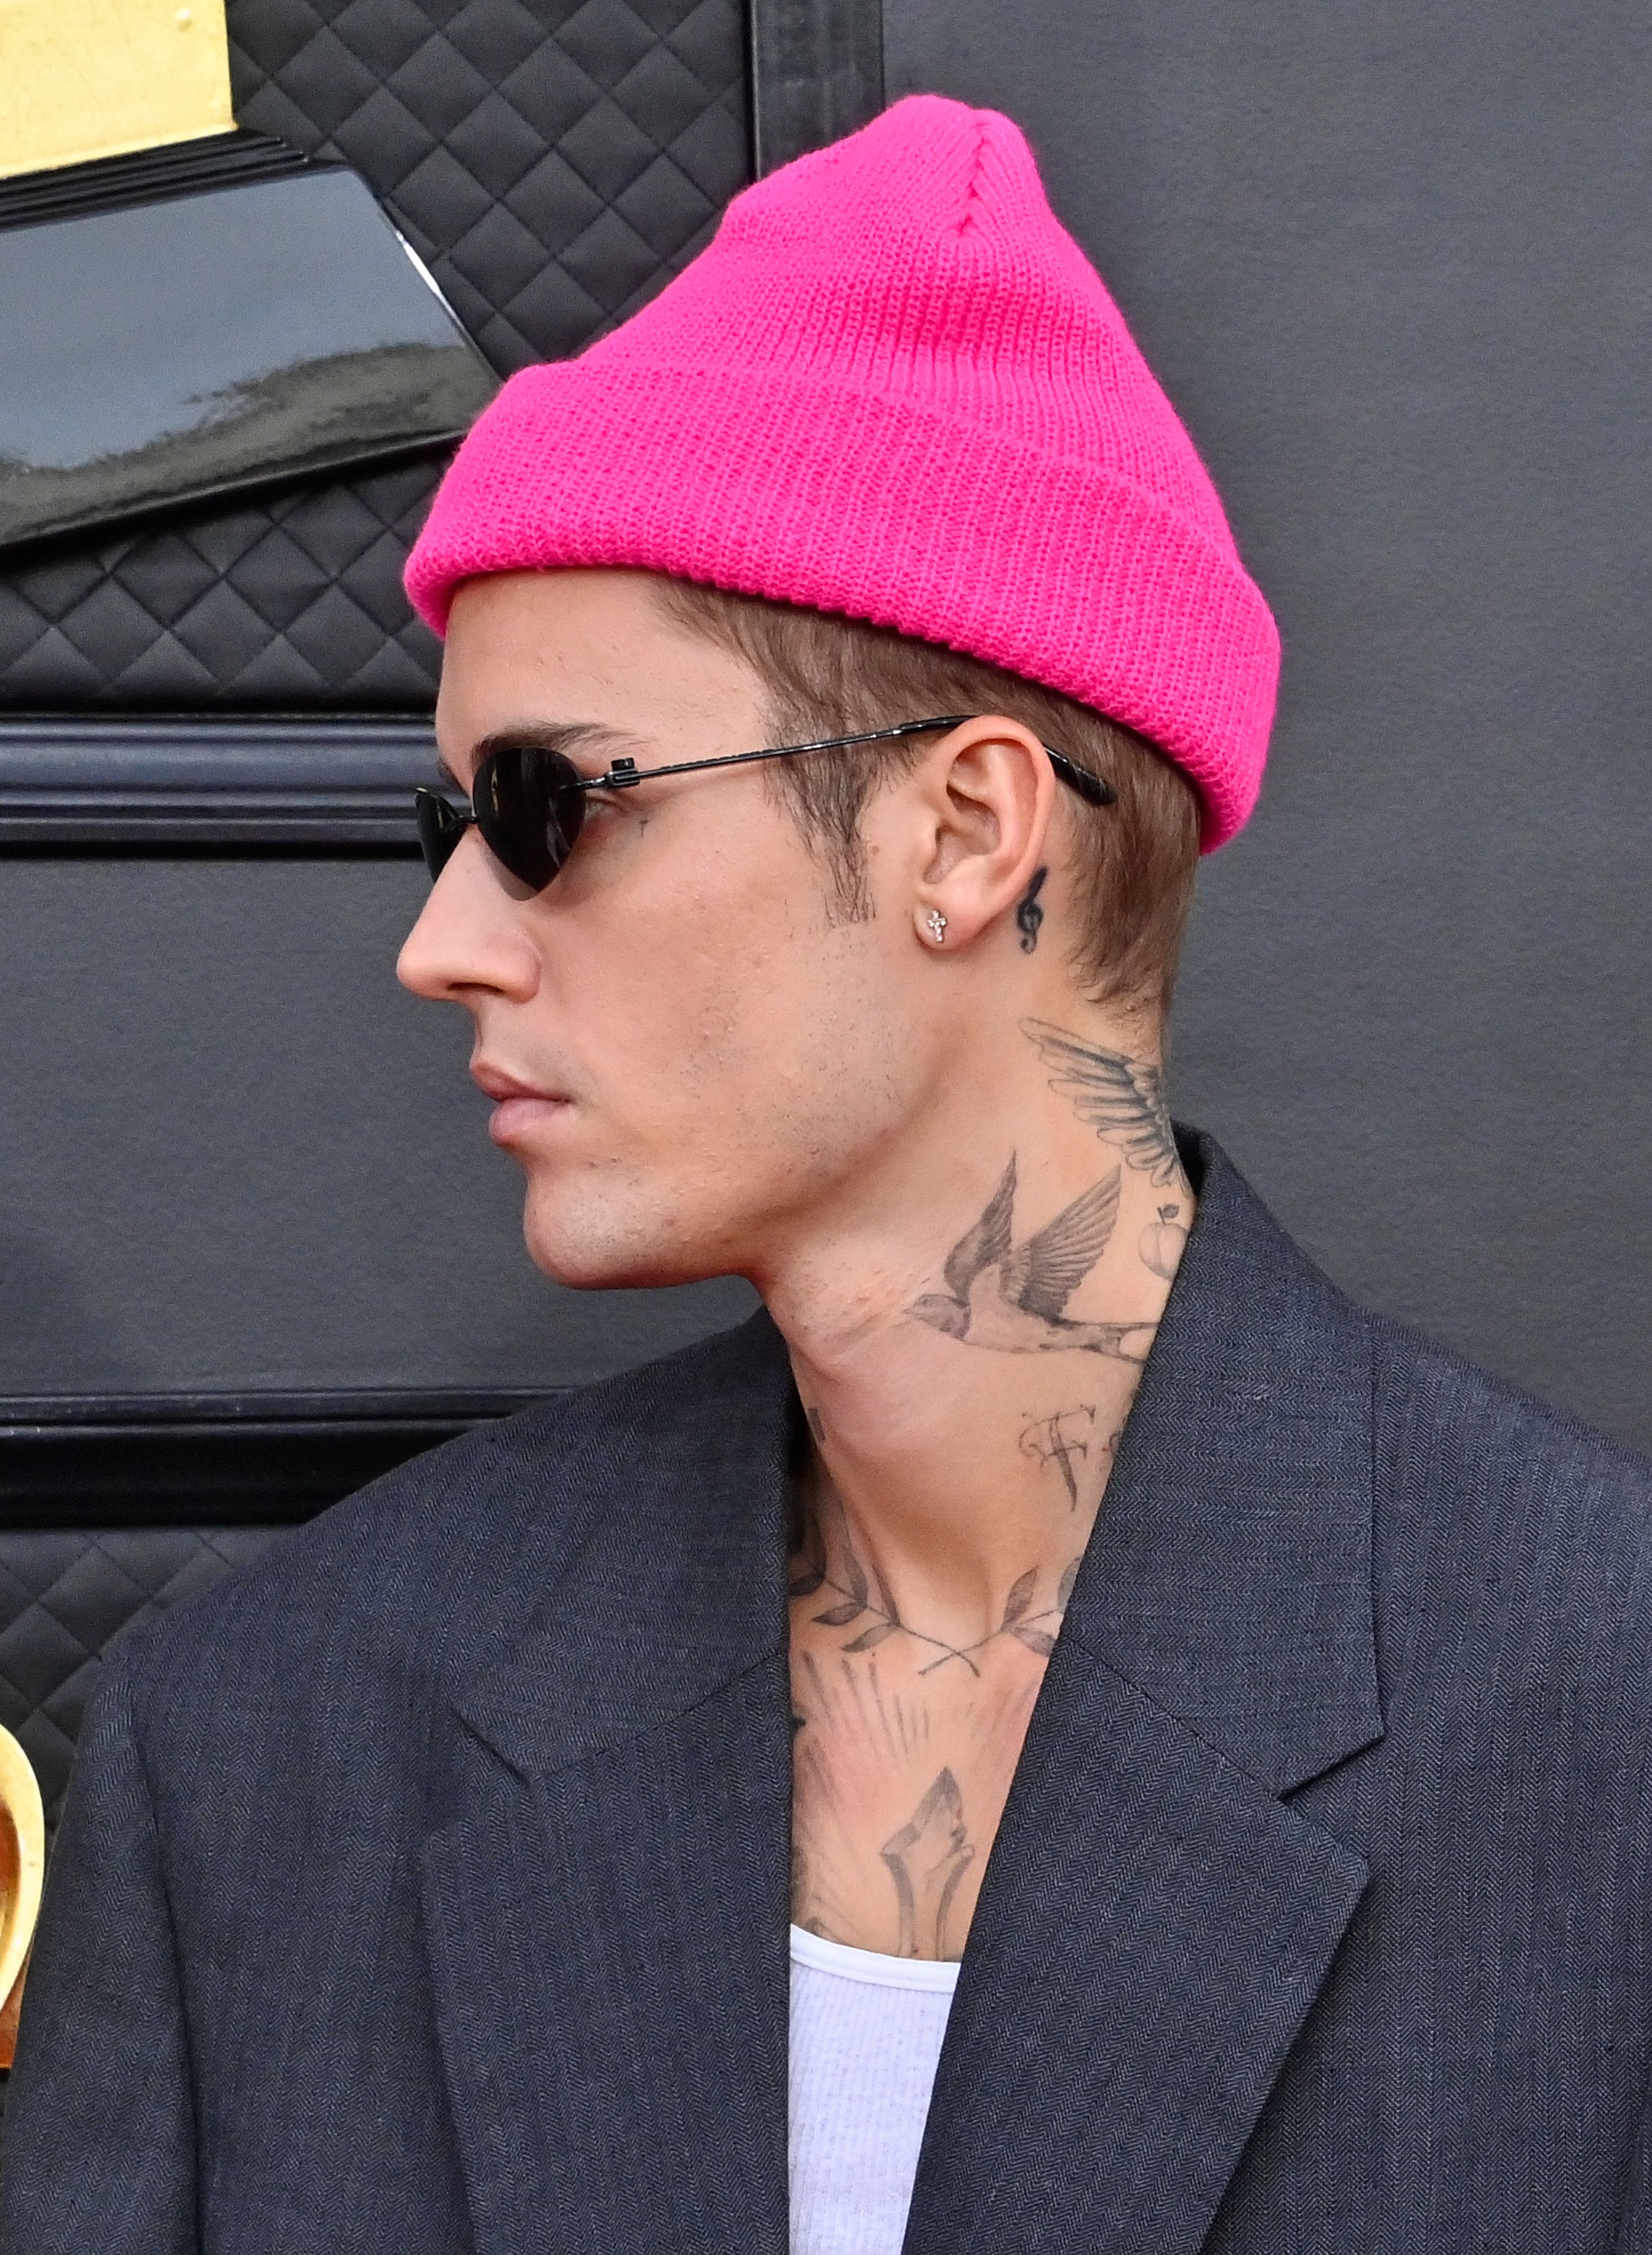 Photos Justin Biebers tattoos  CNN